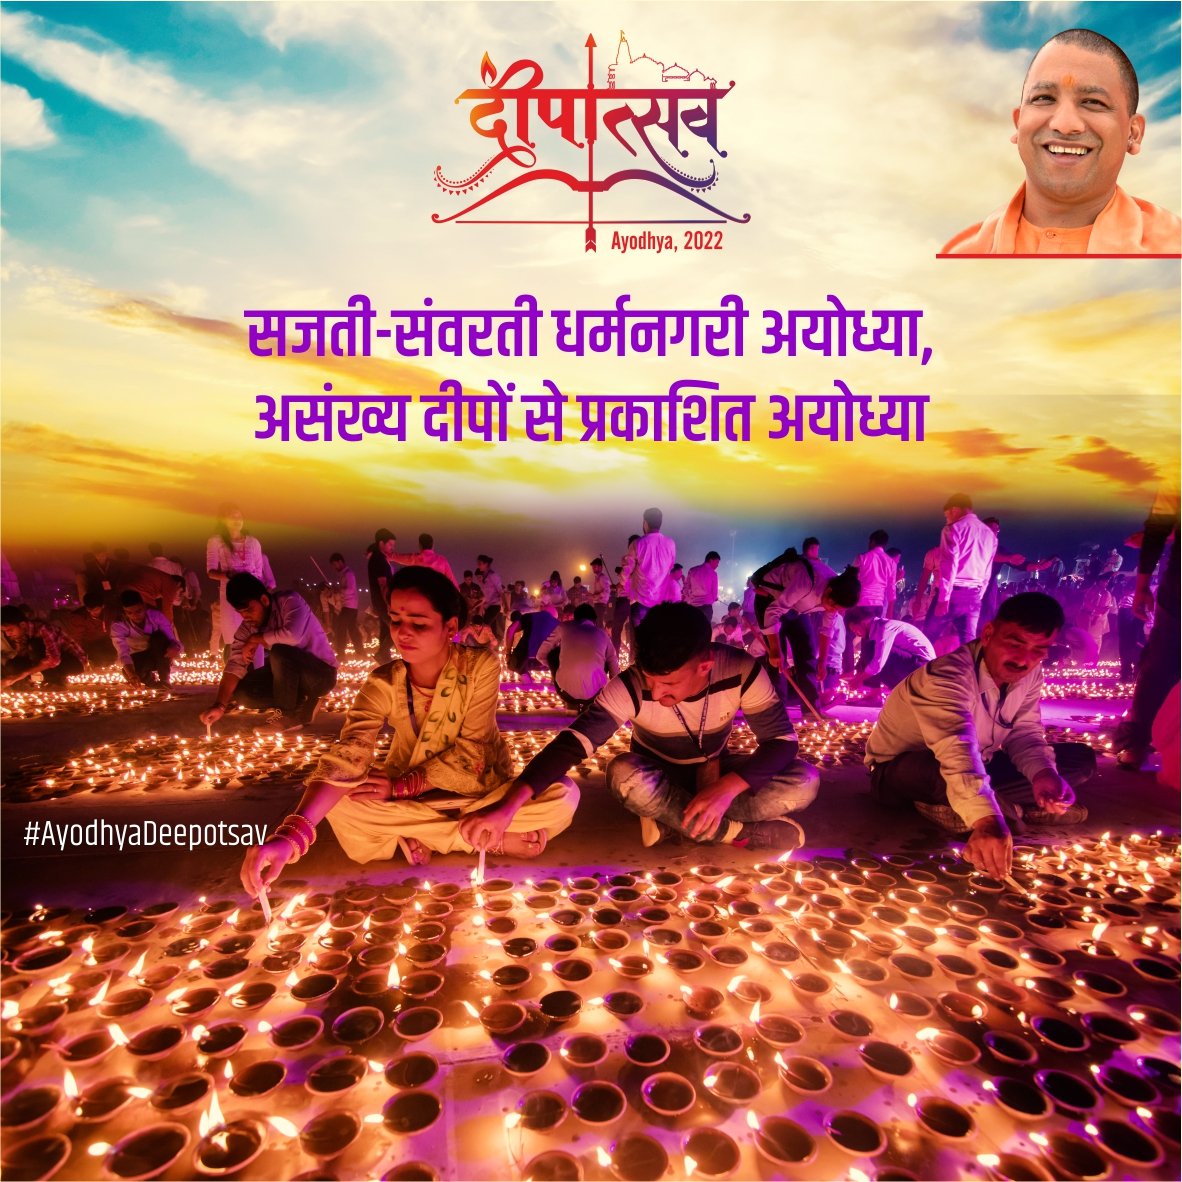 श्री अयोध्या जी में दीप जल रहे हैं विकास के। कोटि—कोटि हिंदुओं का मान रखते मोदी जी और योगी जी... #AyodhyaDeepotsav